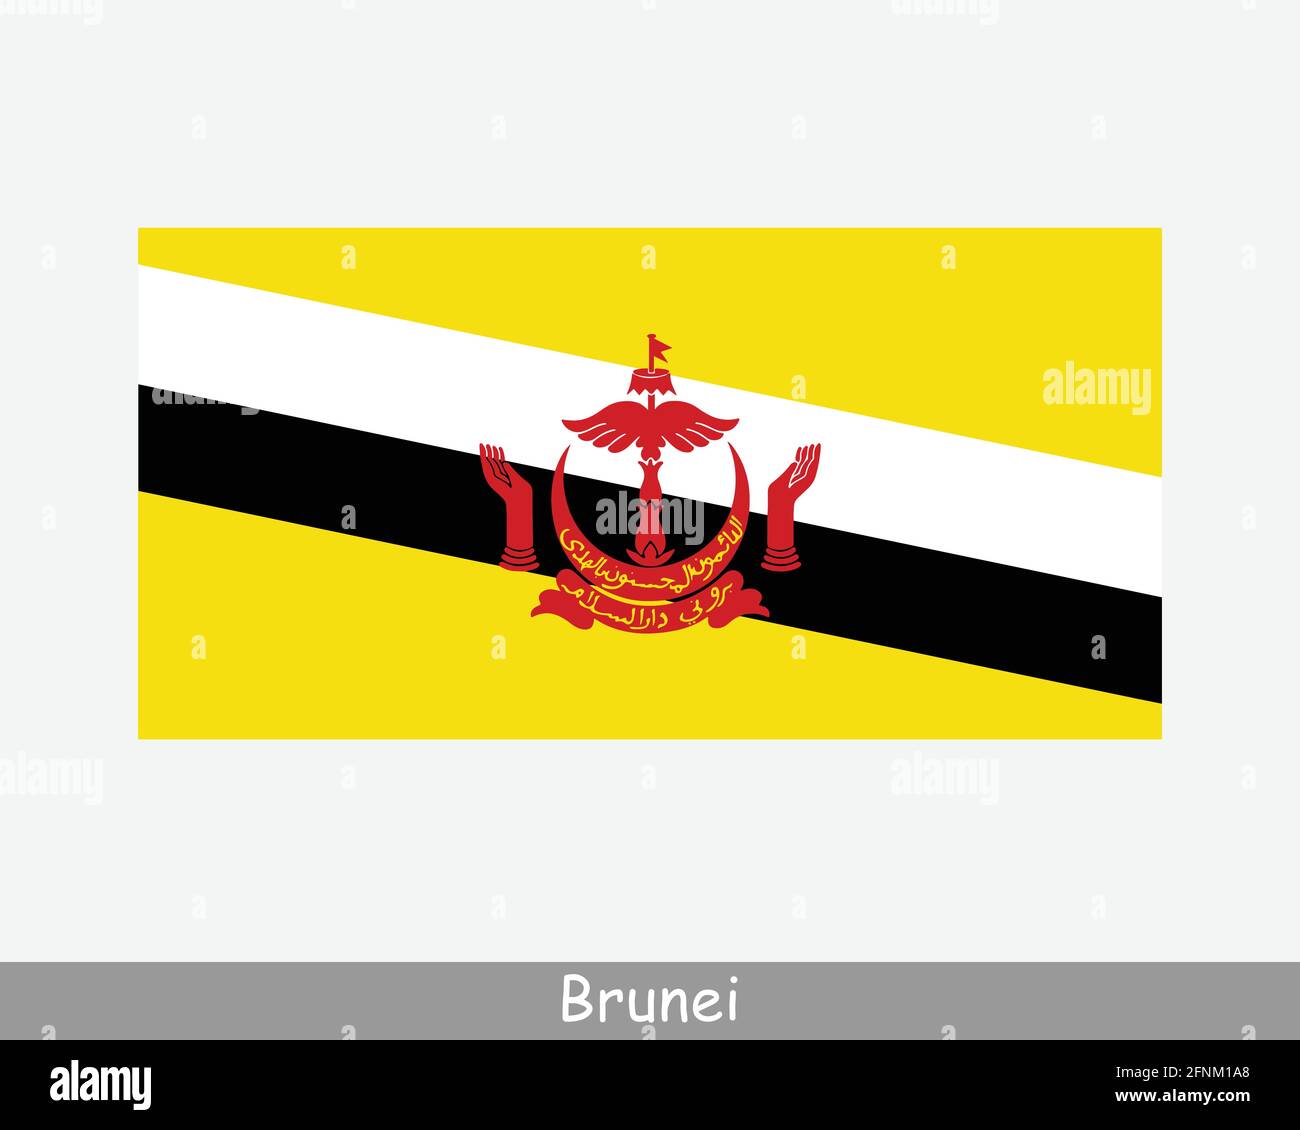 Bandiera Nazionale del Brunei Darussalam. Bandiera Bruneian. Nazione di Brunei, l'Abode della Pace Banner dettagliato. File di illustrazione vettoriale EPS Illustrazione Vettoriale